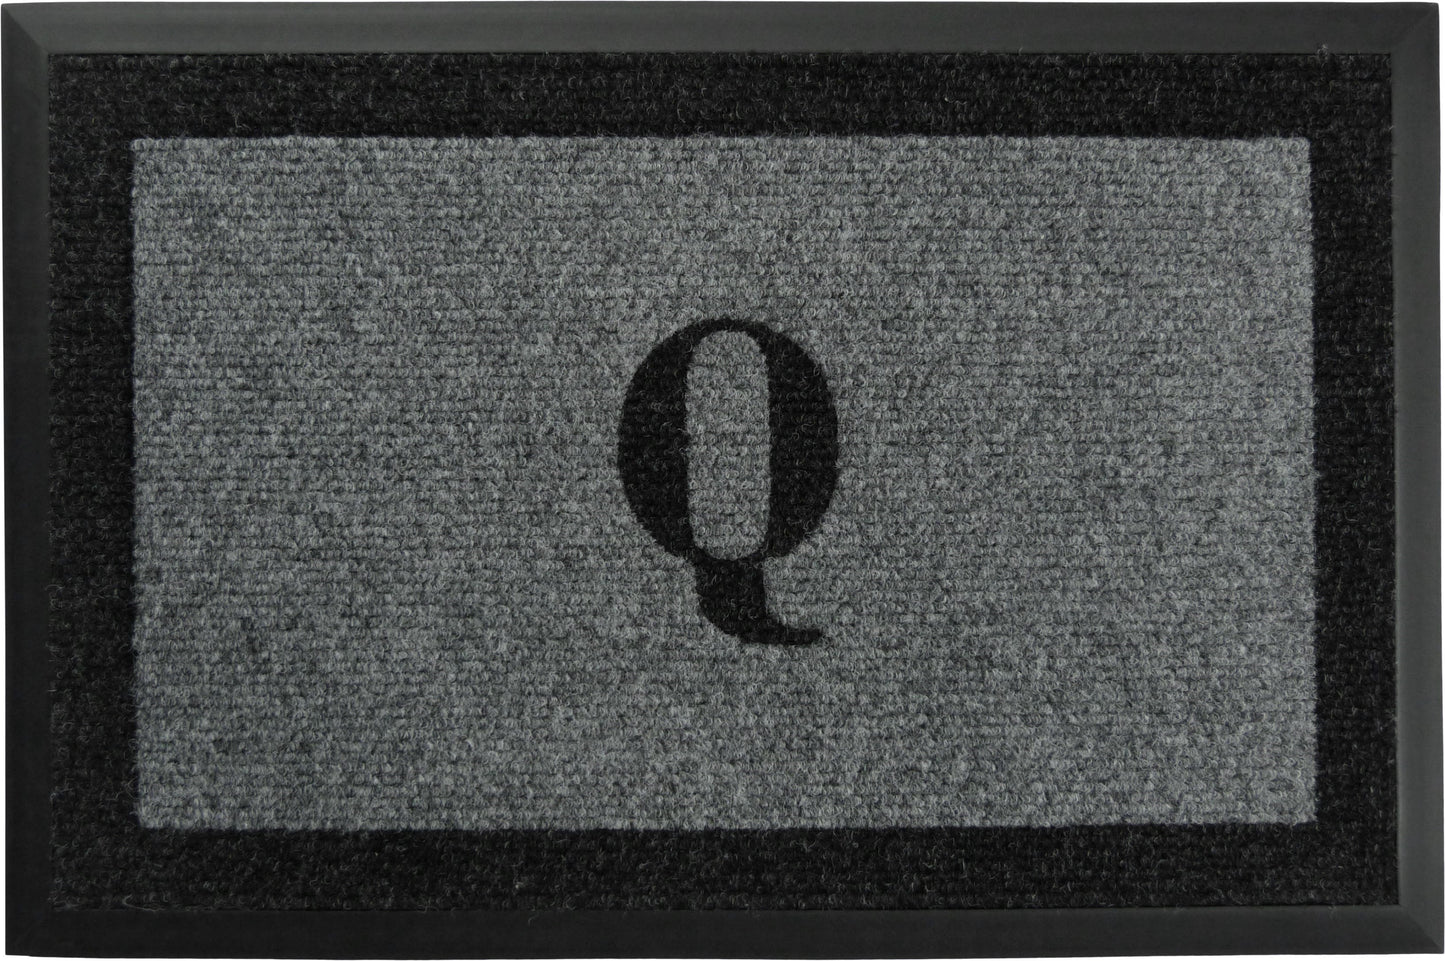 Samson Monogram  "Q" Door Mat